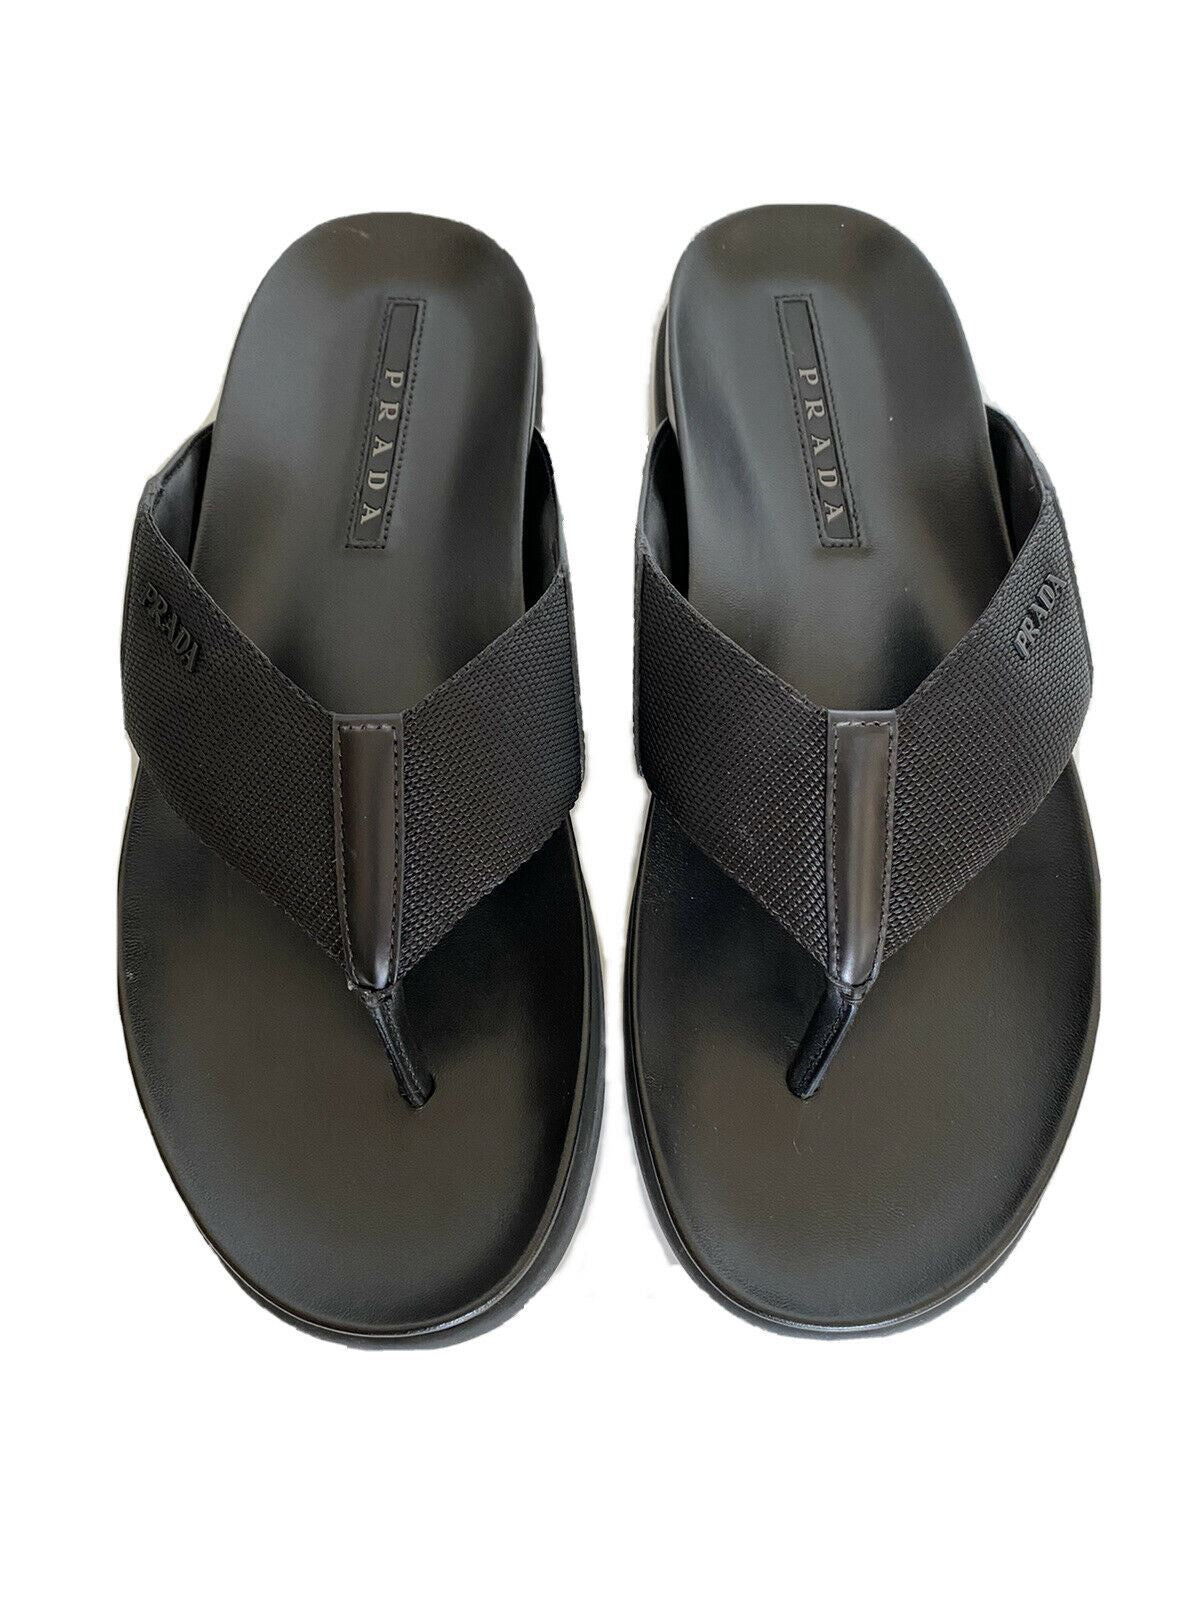 NIB $520 Prada Milano Мужские сандалии-шлепанцы Обувь Черный 7 США 2Y3030 Италия 